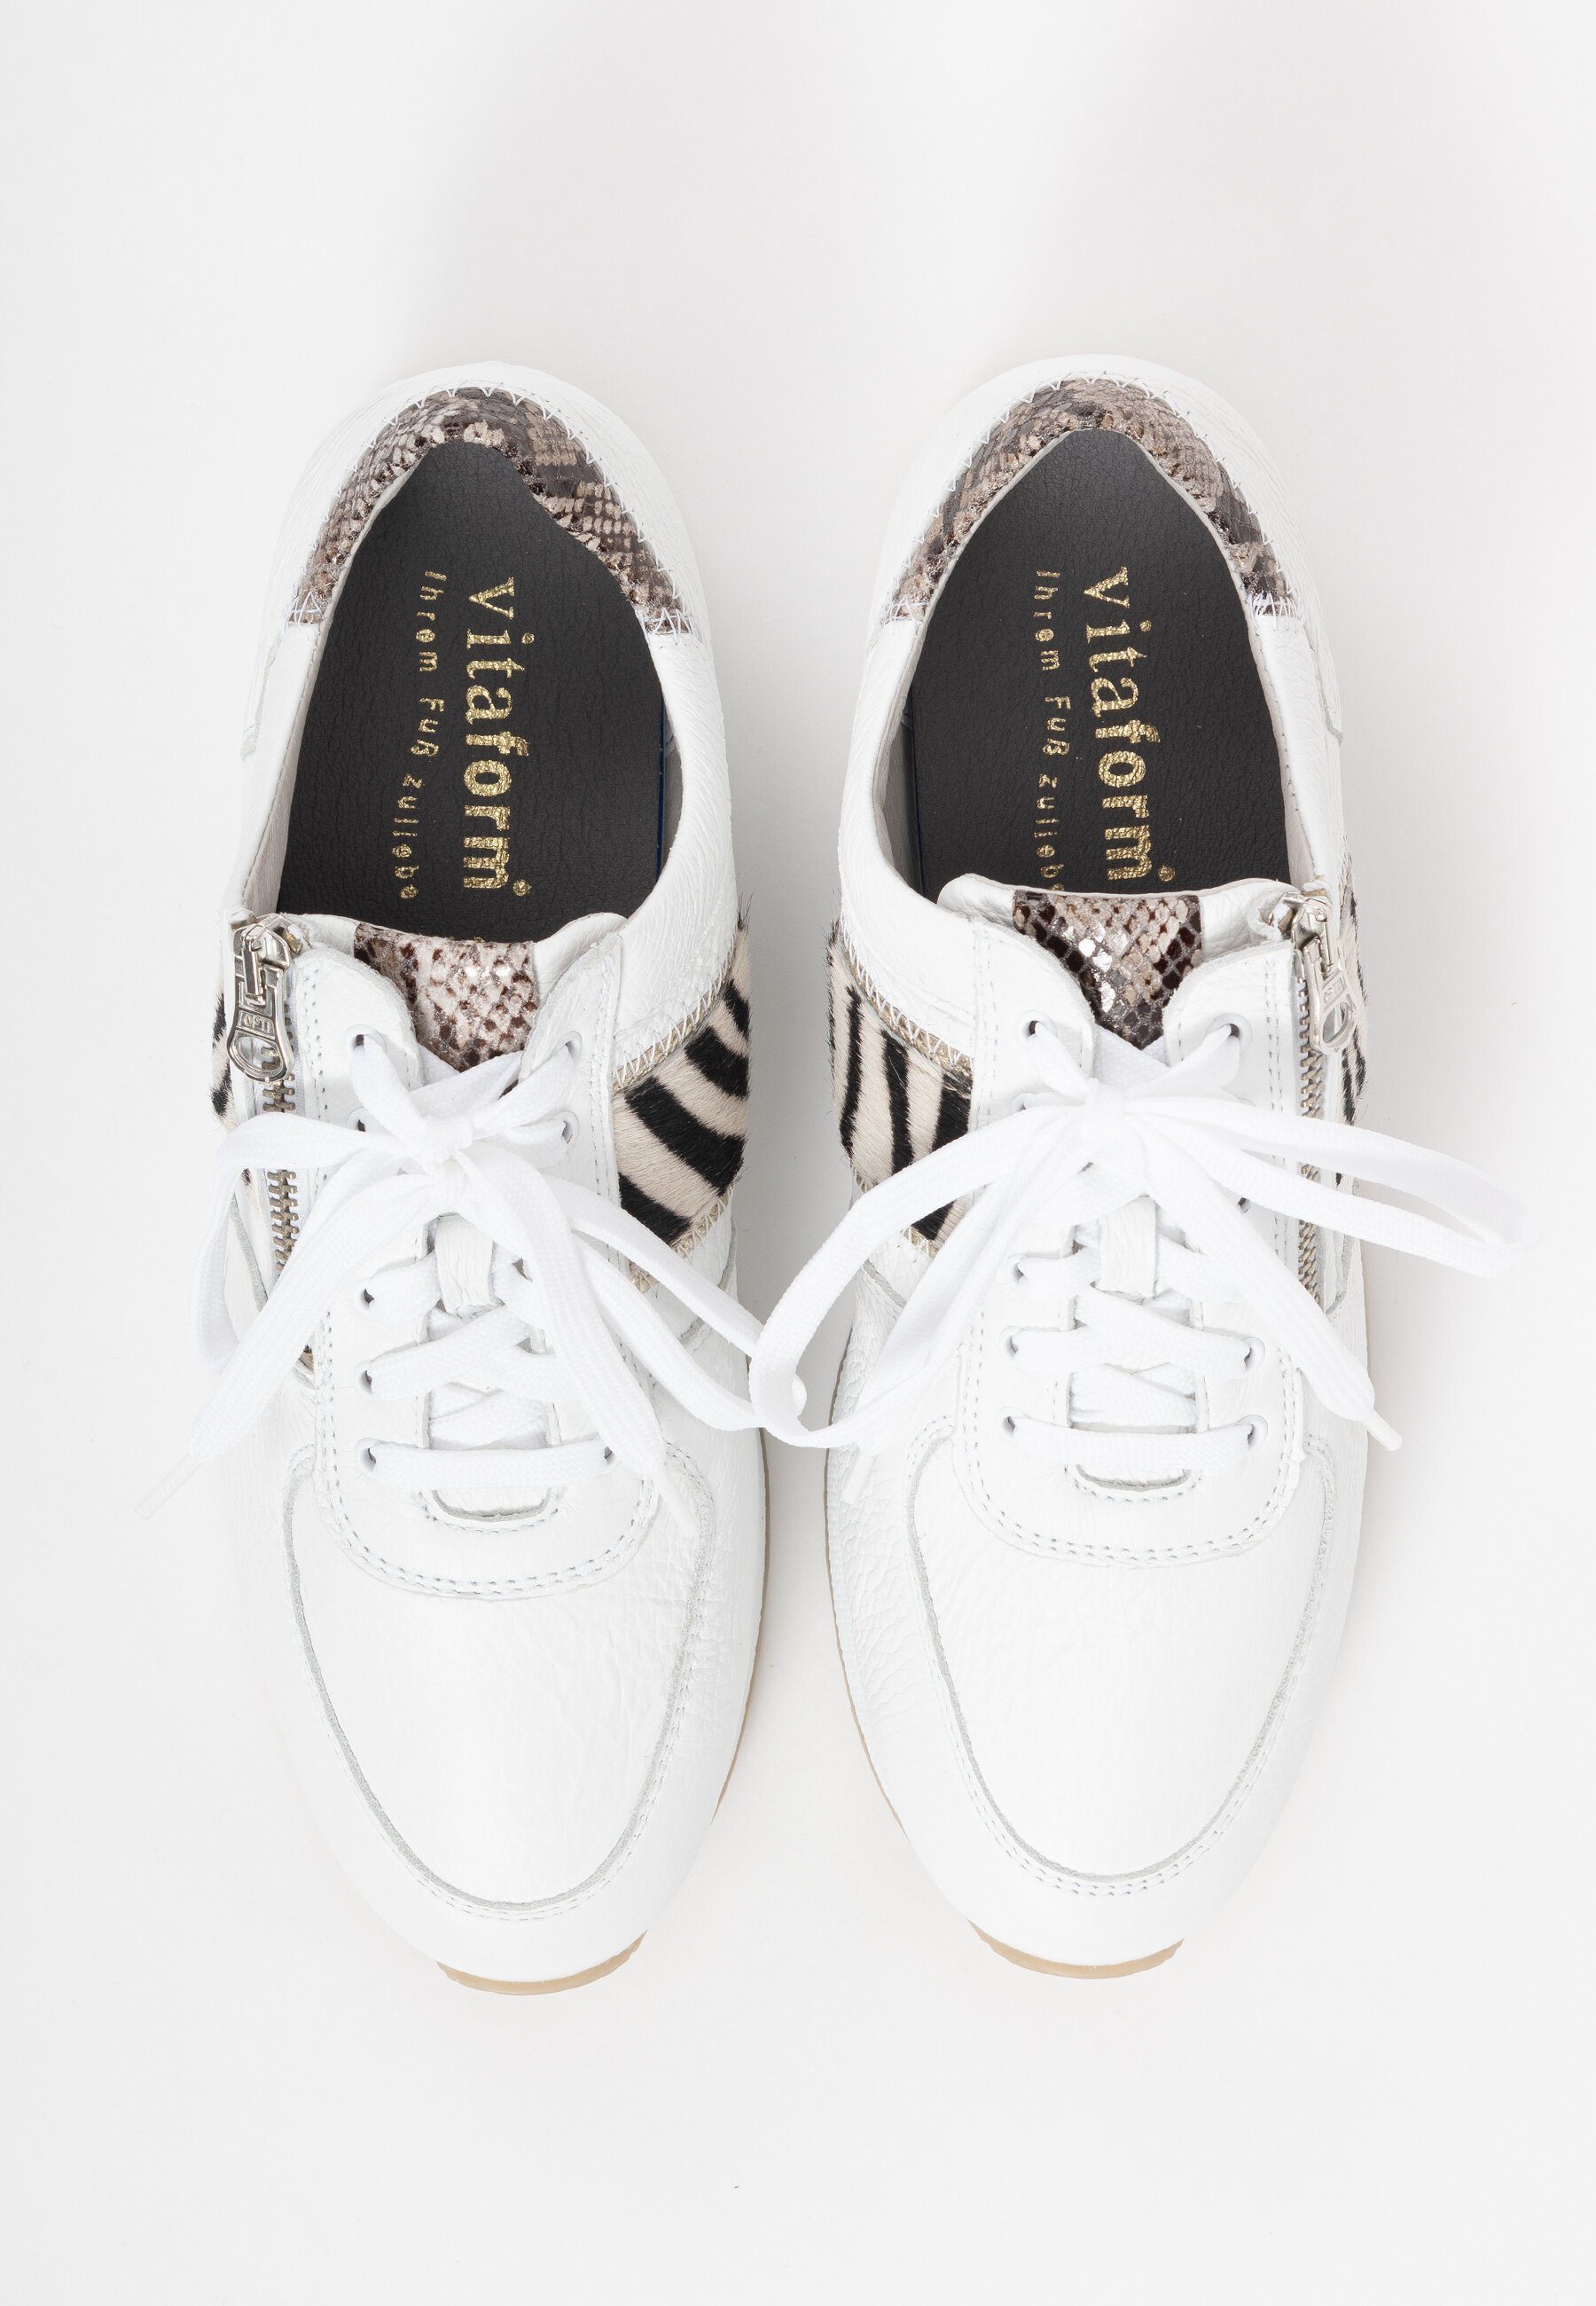 Schuhe Sneaker vitaform Sneaker Sneaker Damen mit Fellapplikation - Bequeme Schuhe Damen leicht und extra soft - Die atmungsakti